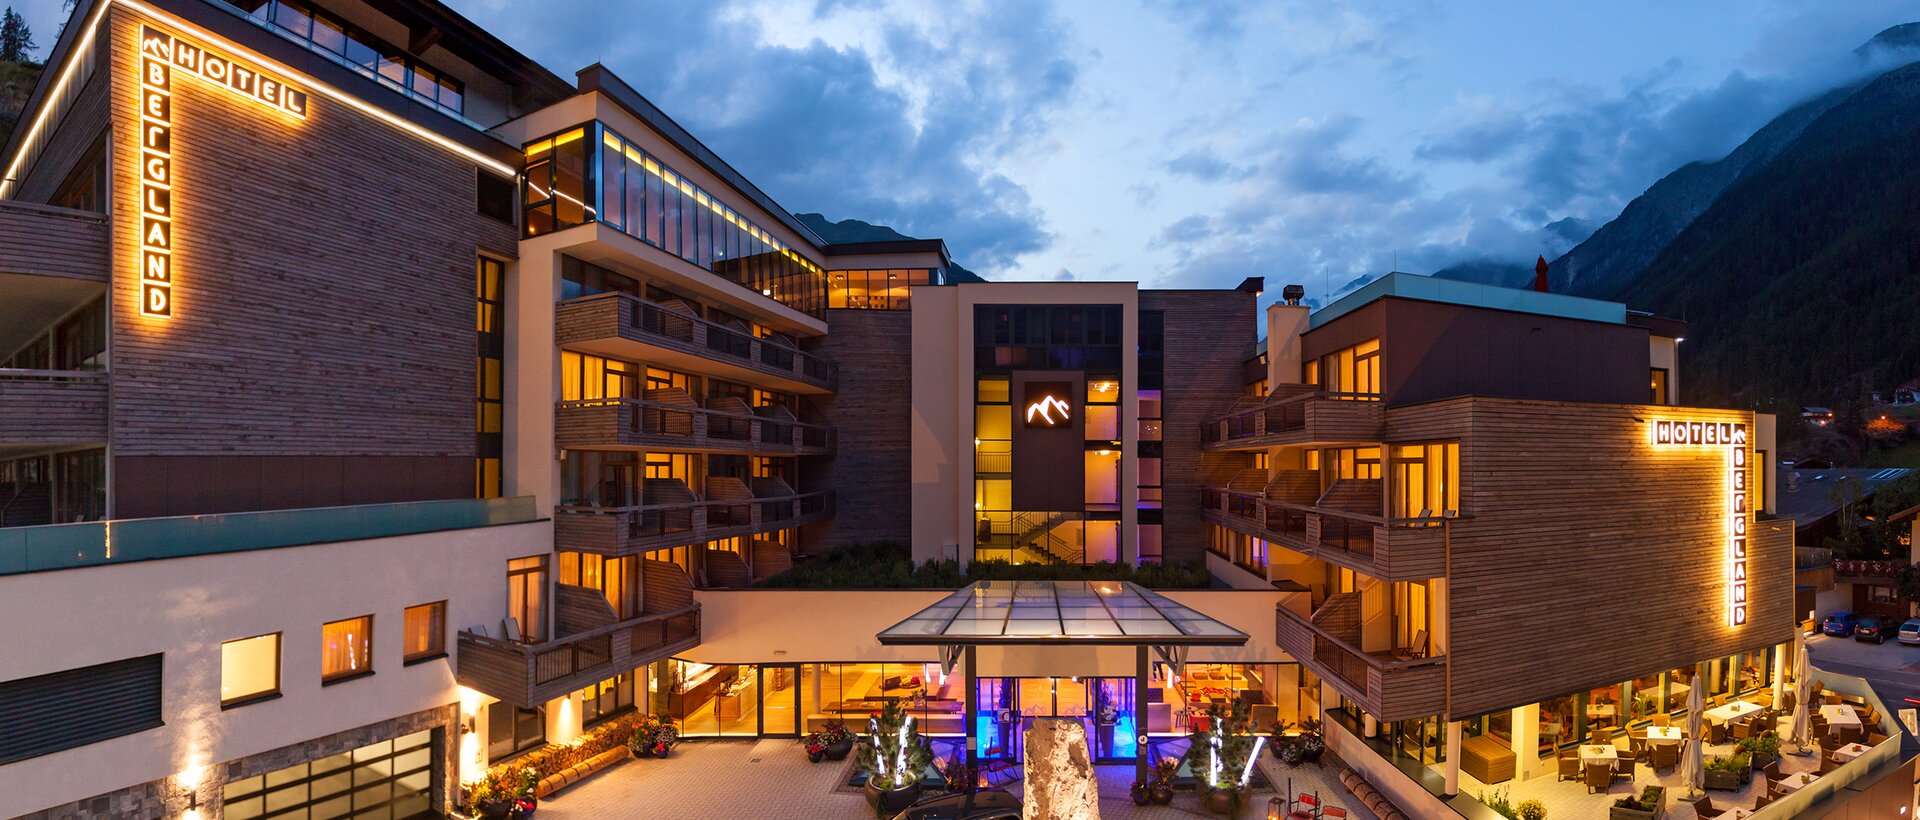 hotel Bergland Sölden by night